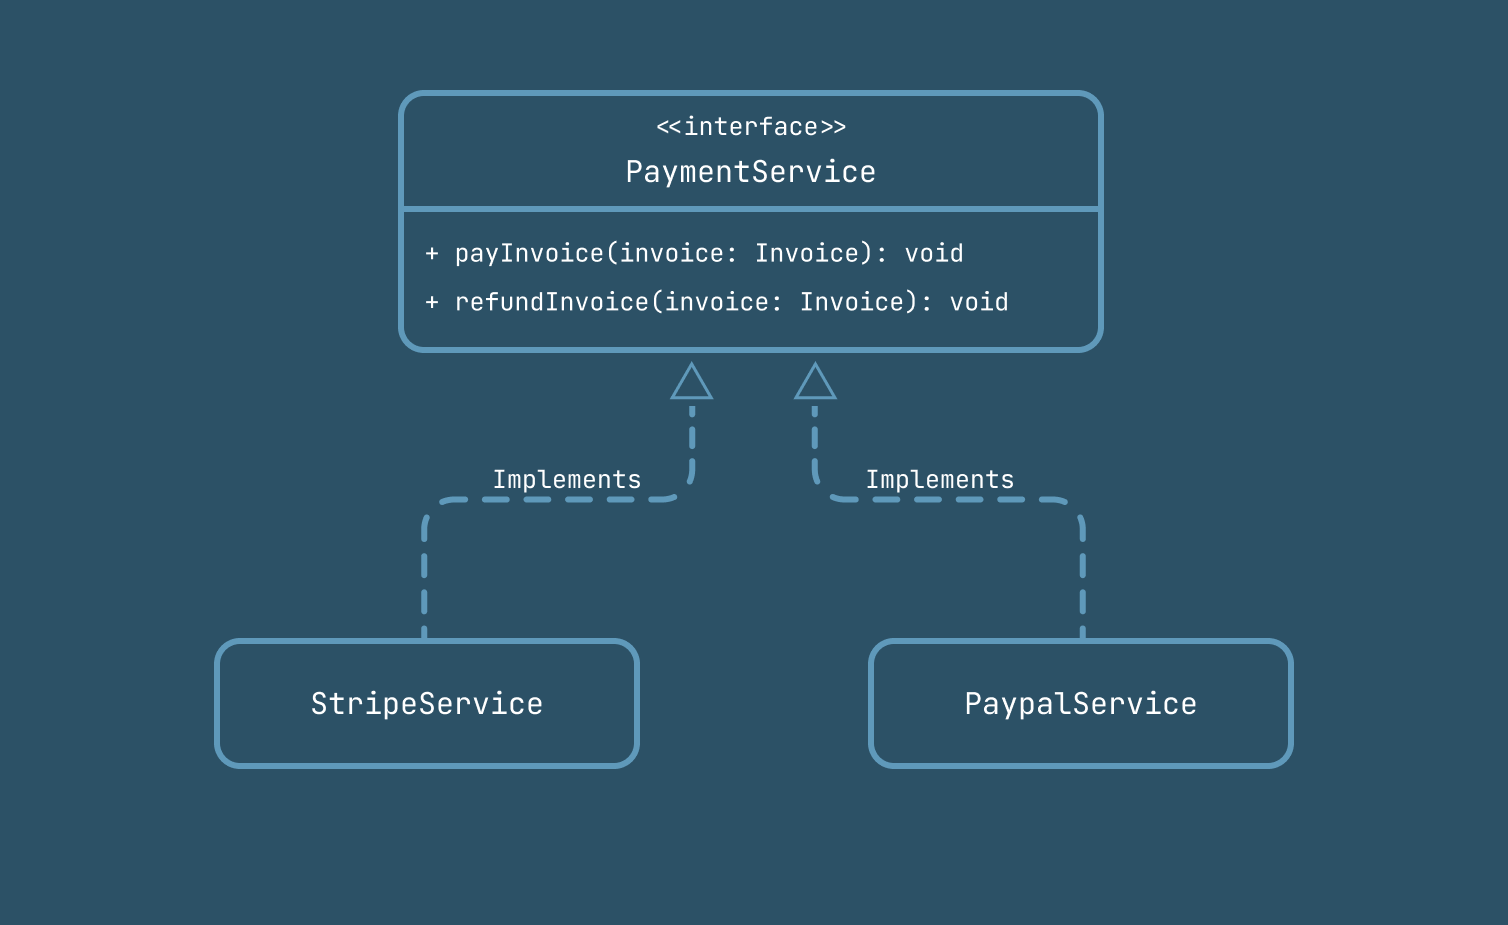 صورة توضيحية لكلاسات مختلفة تطبق interface خاصة بخدمات الدفع